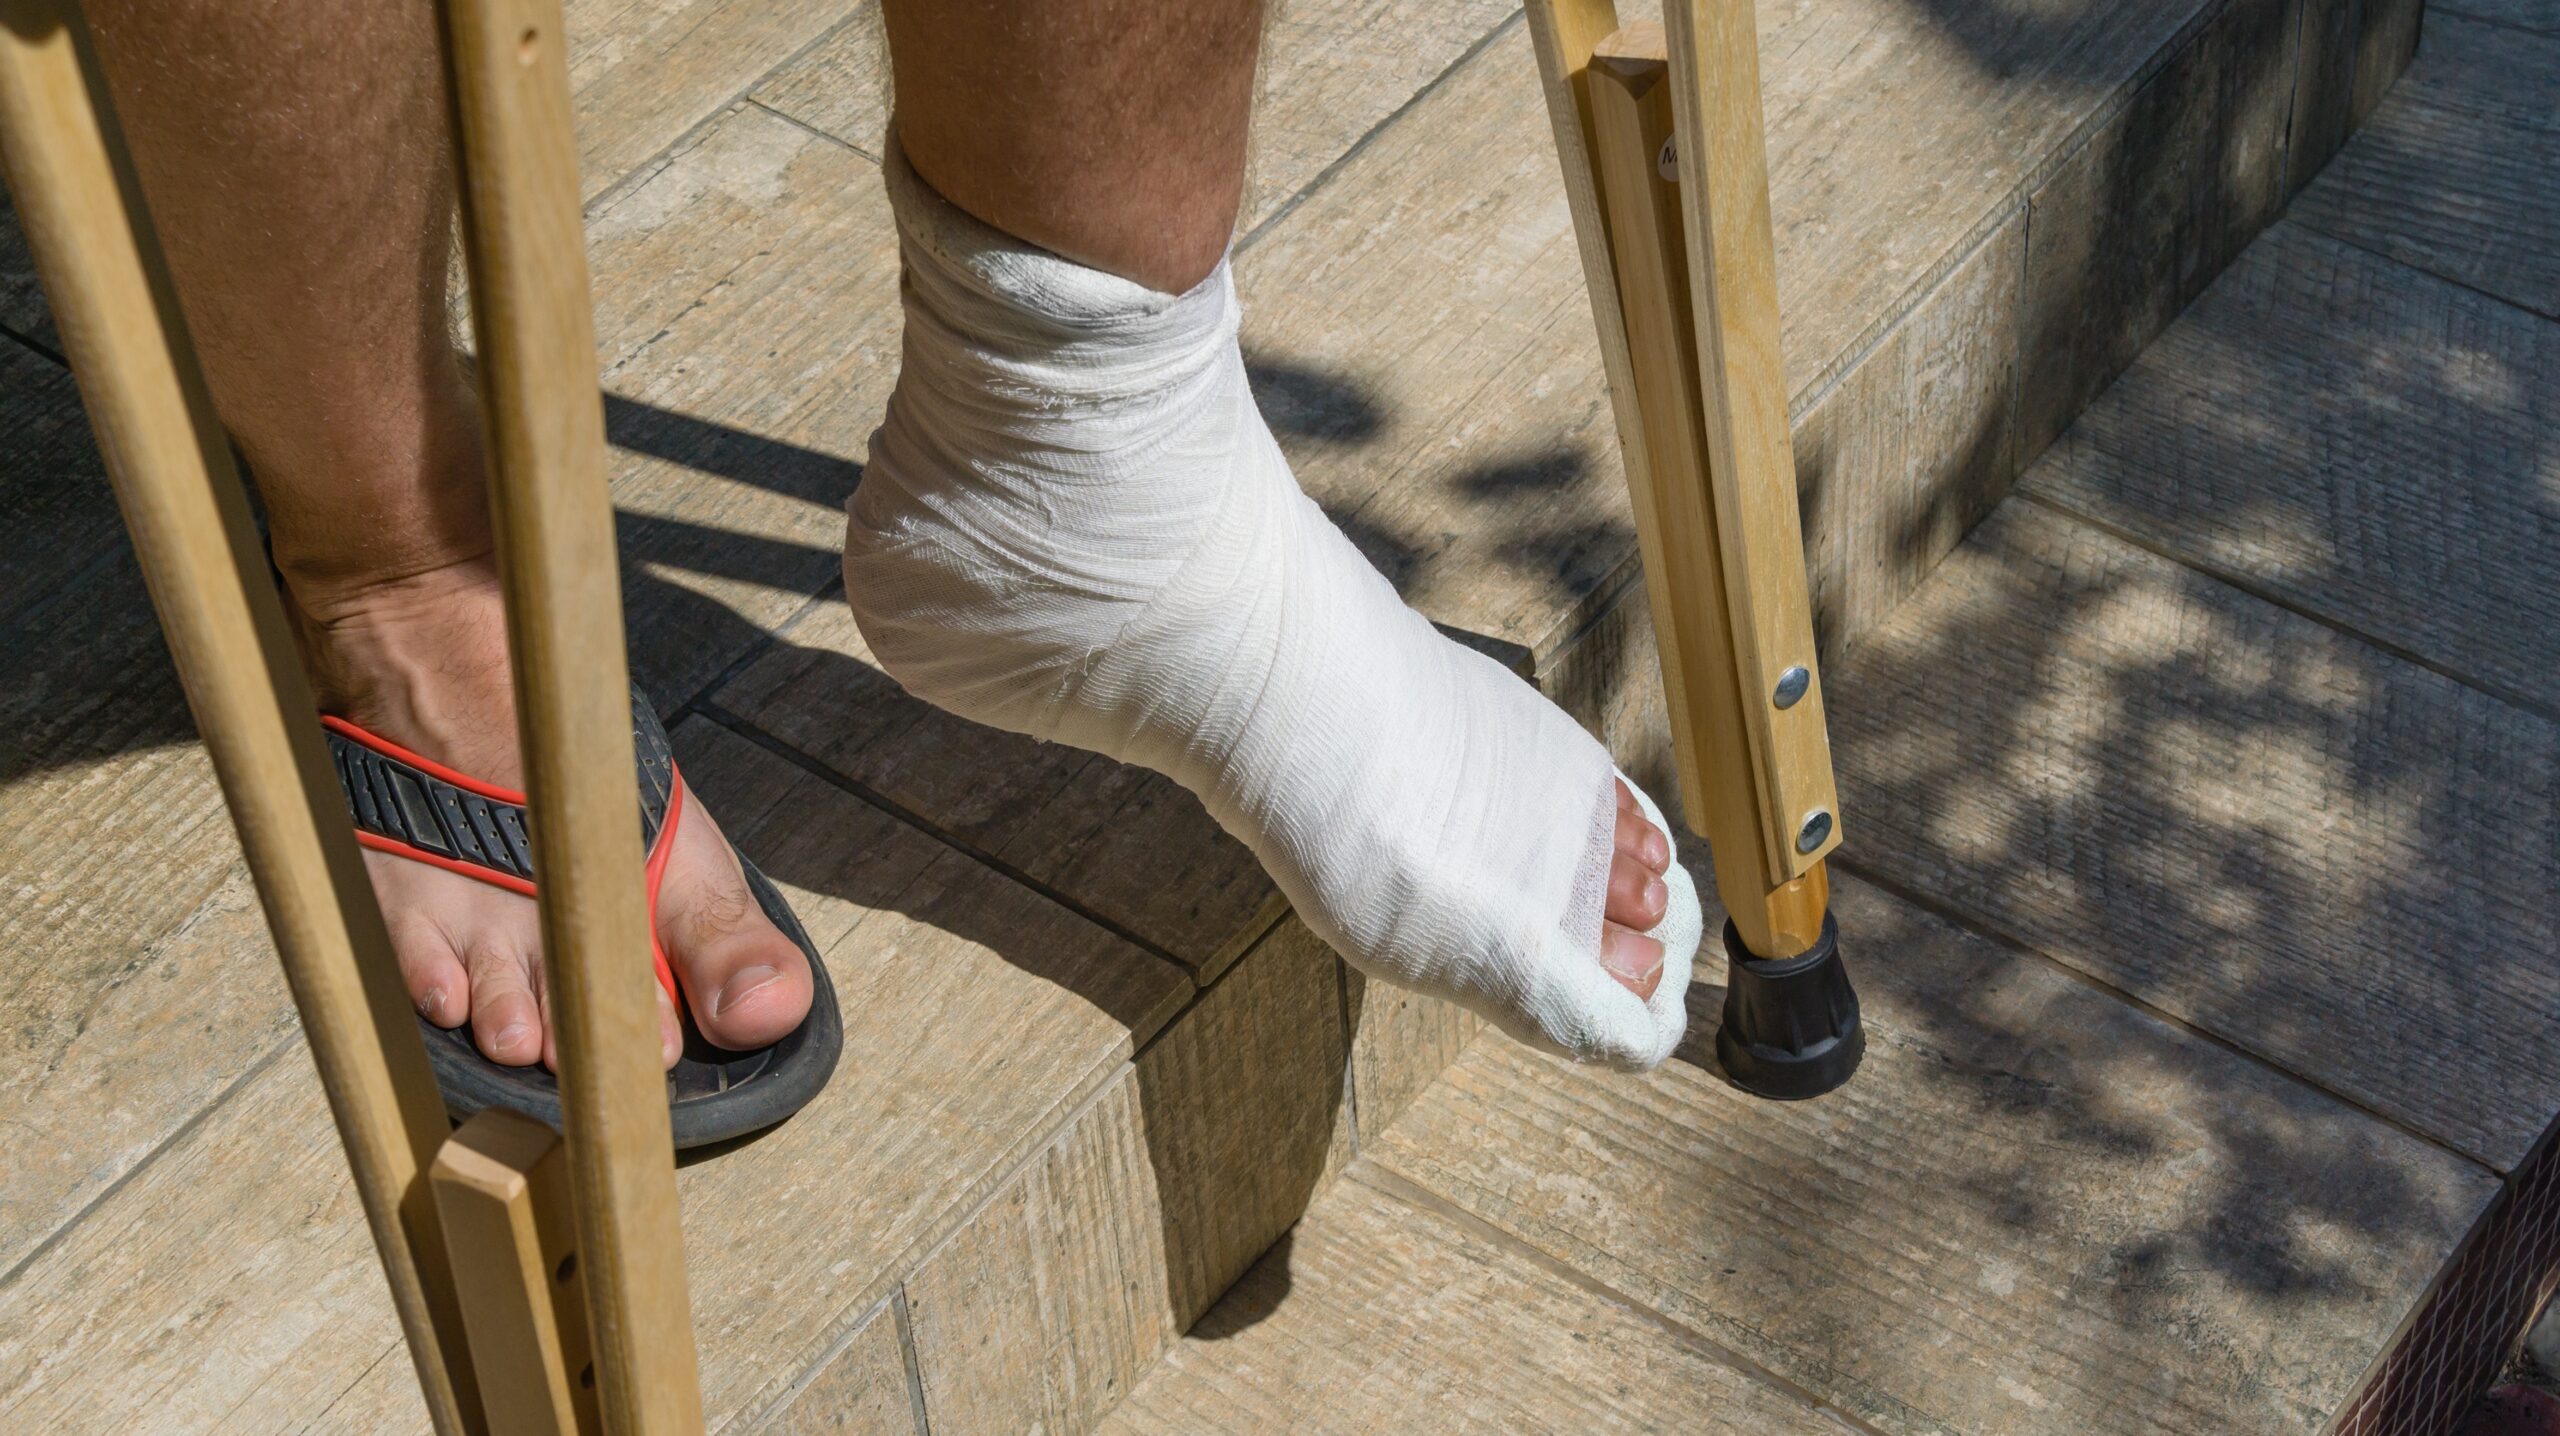 Break my leg hurt me bad. Сломала ногу гипс костыли. Человек на костылях. Костыли при переломе пальца ноги.